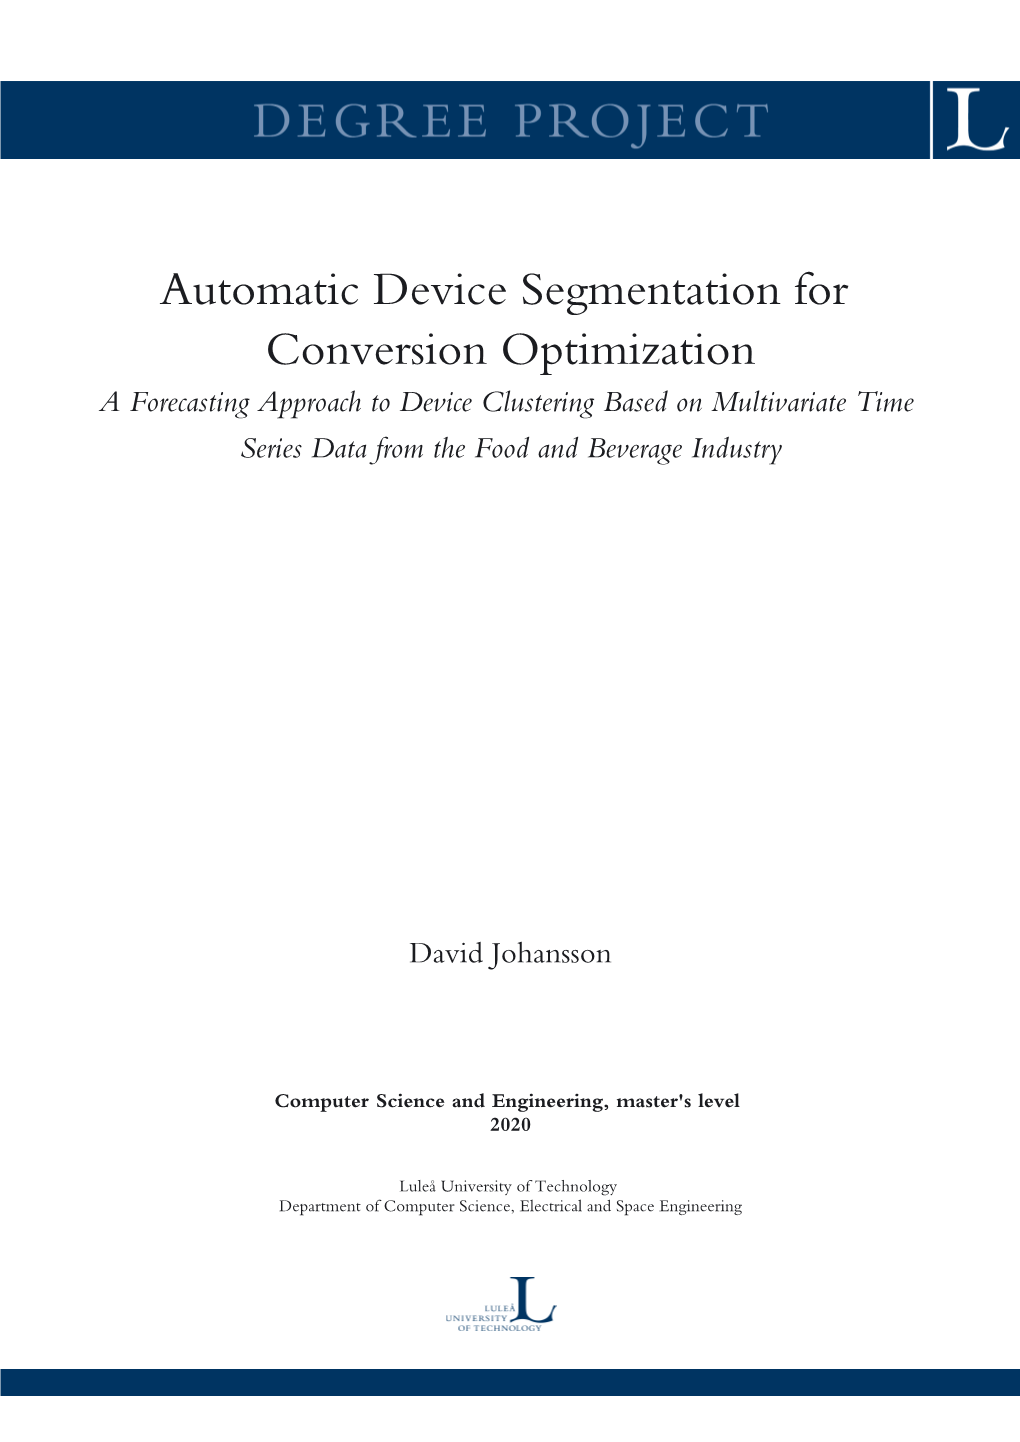 Automatic Device Segmentation for Conversion Optimization